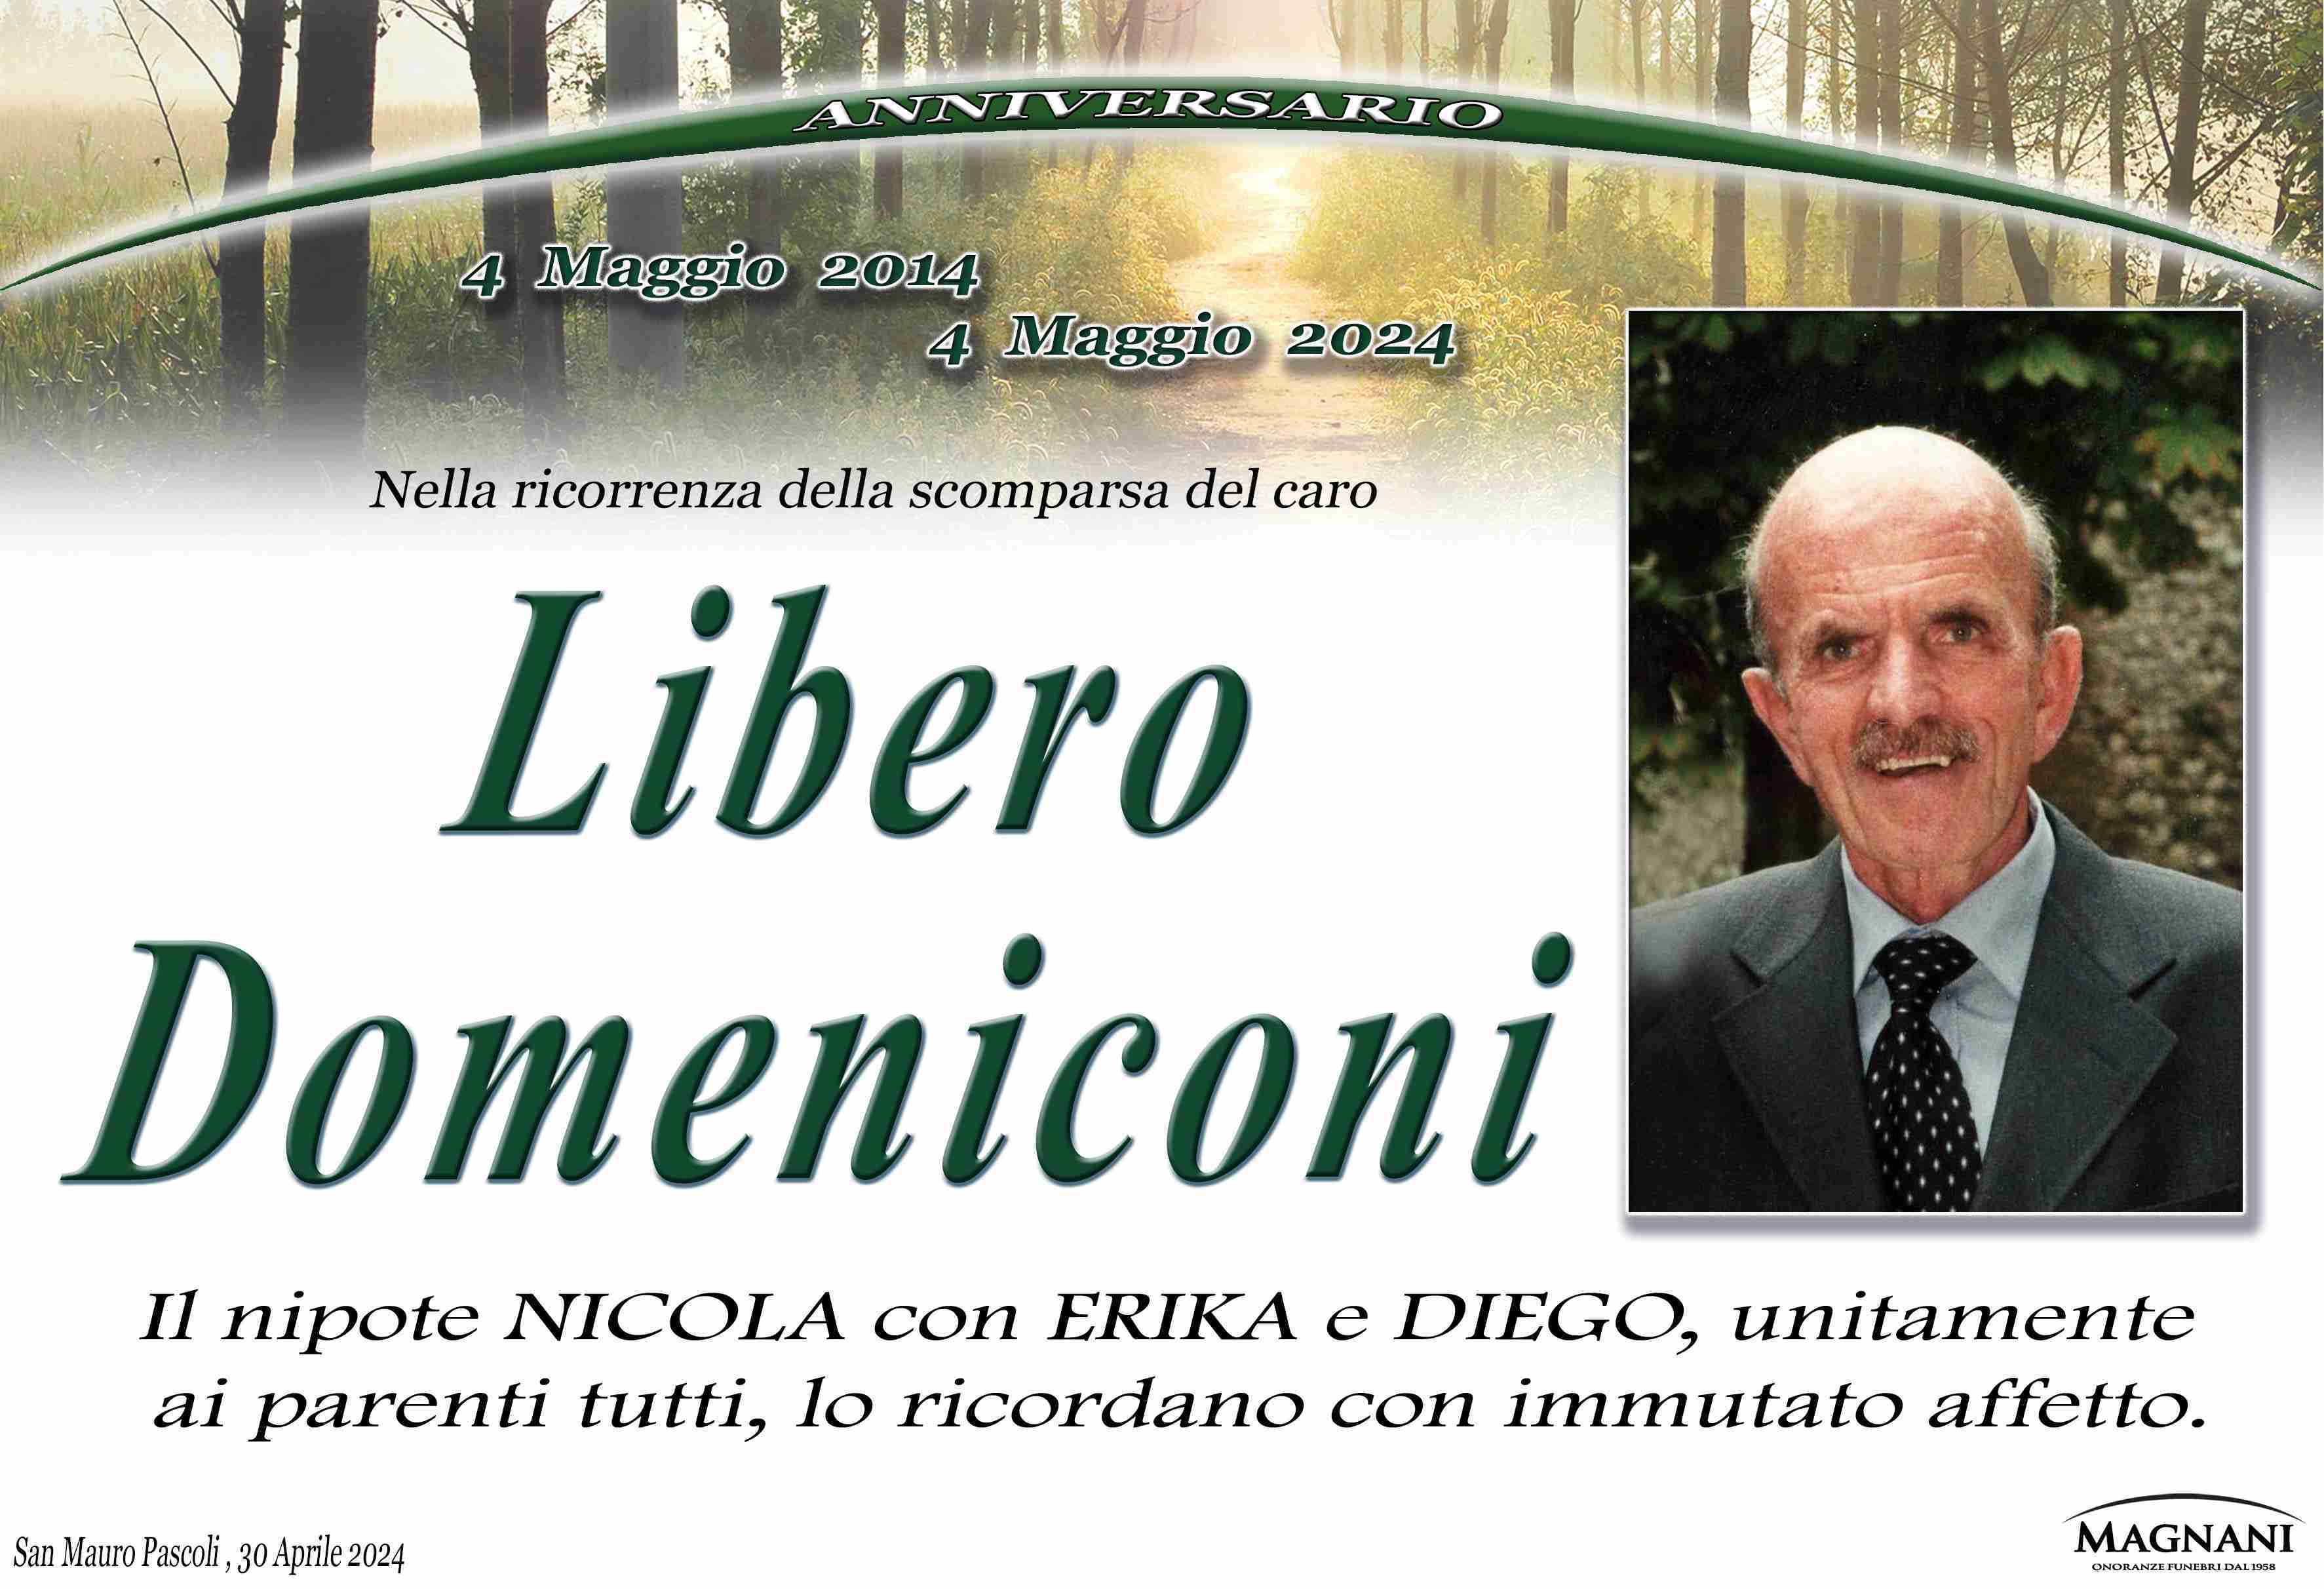 Libero Domeniconi